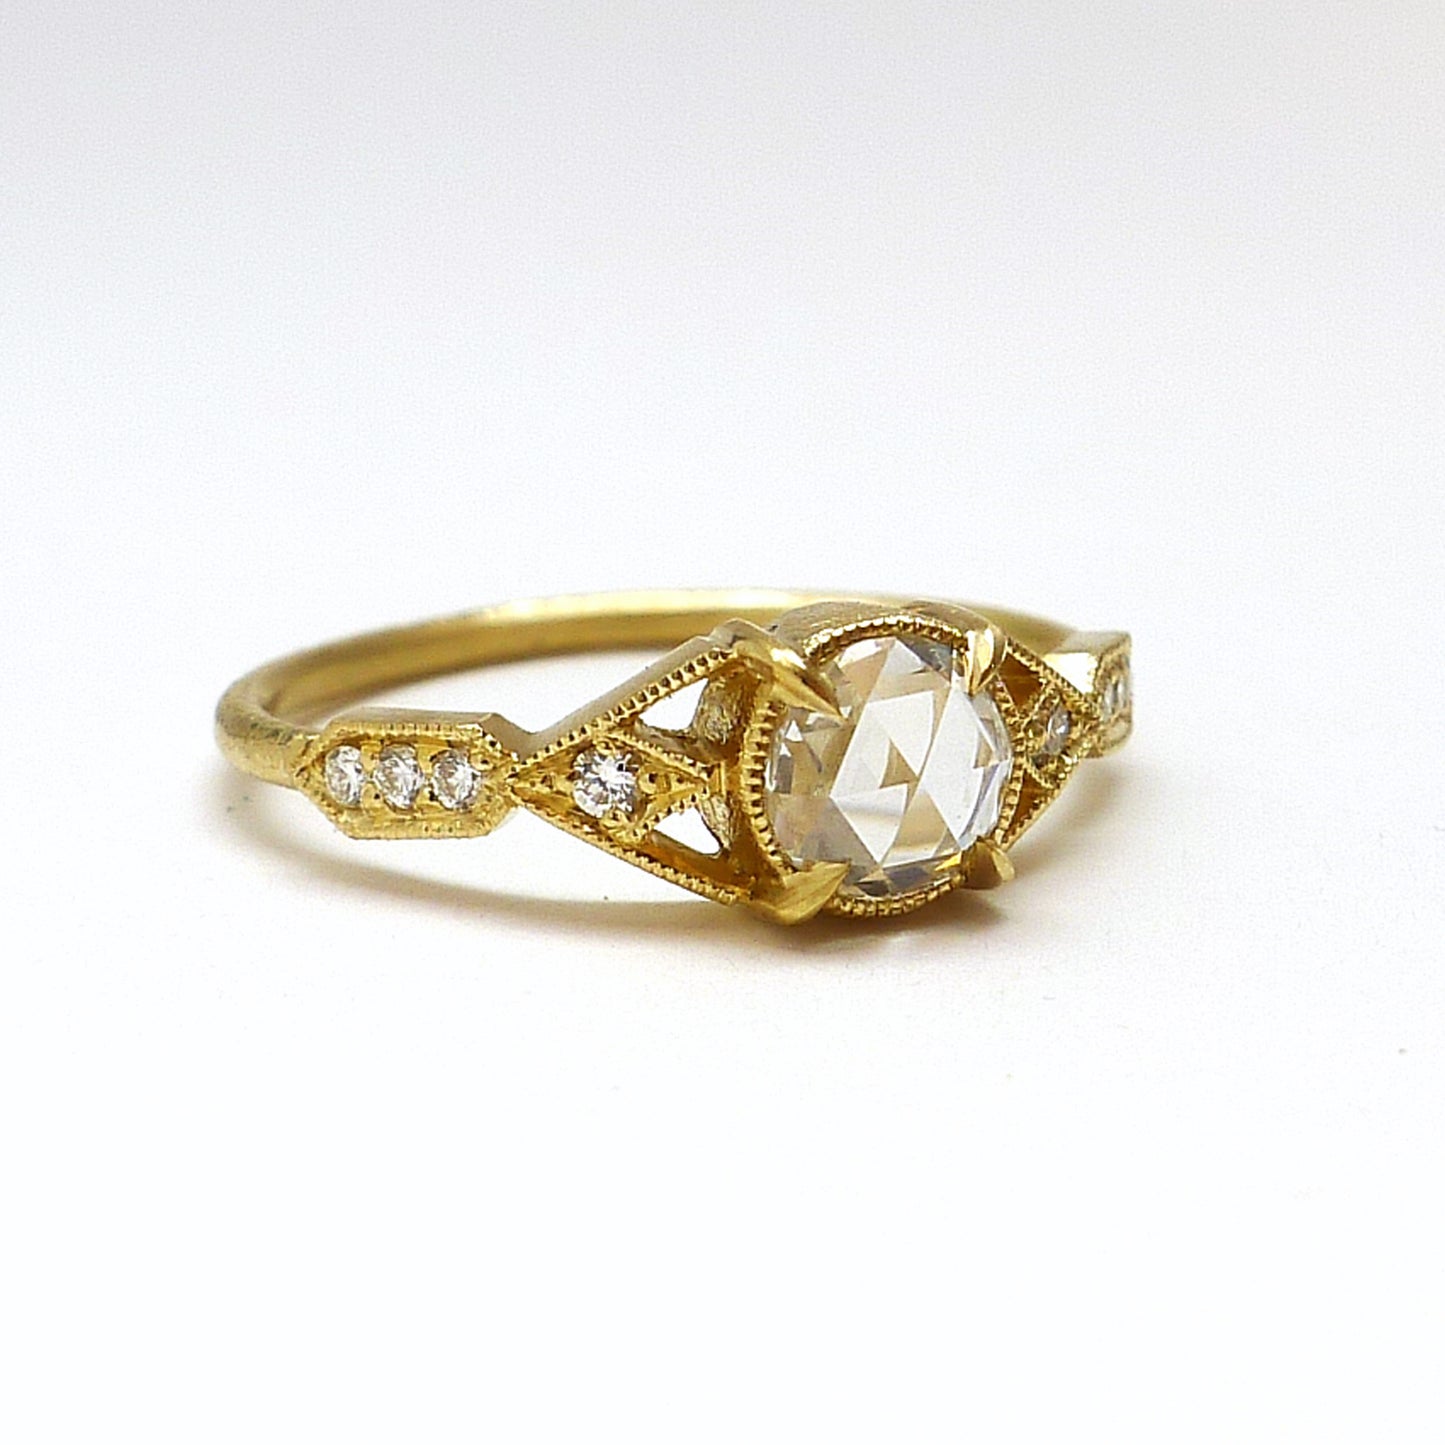 Aestas Ring With White Diamond